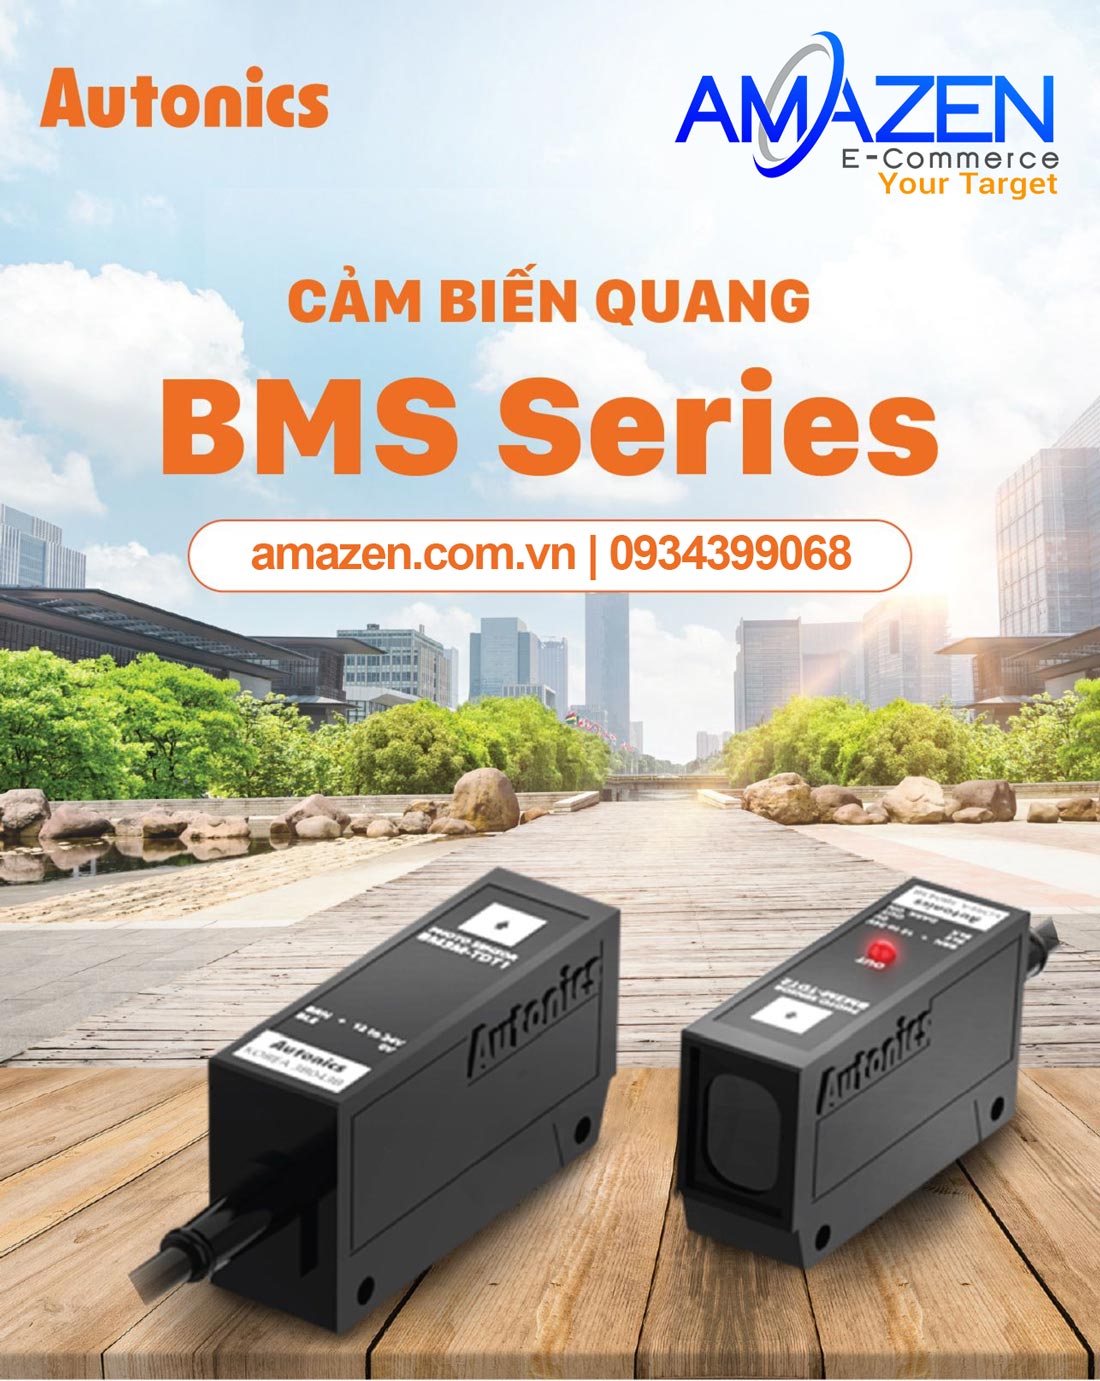 Cảm biến quang Autonics BMS Series